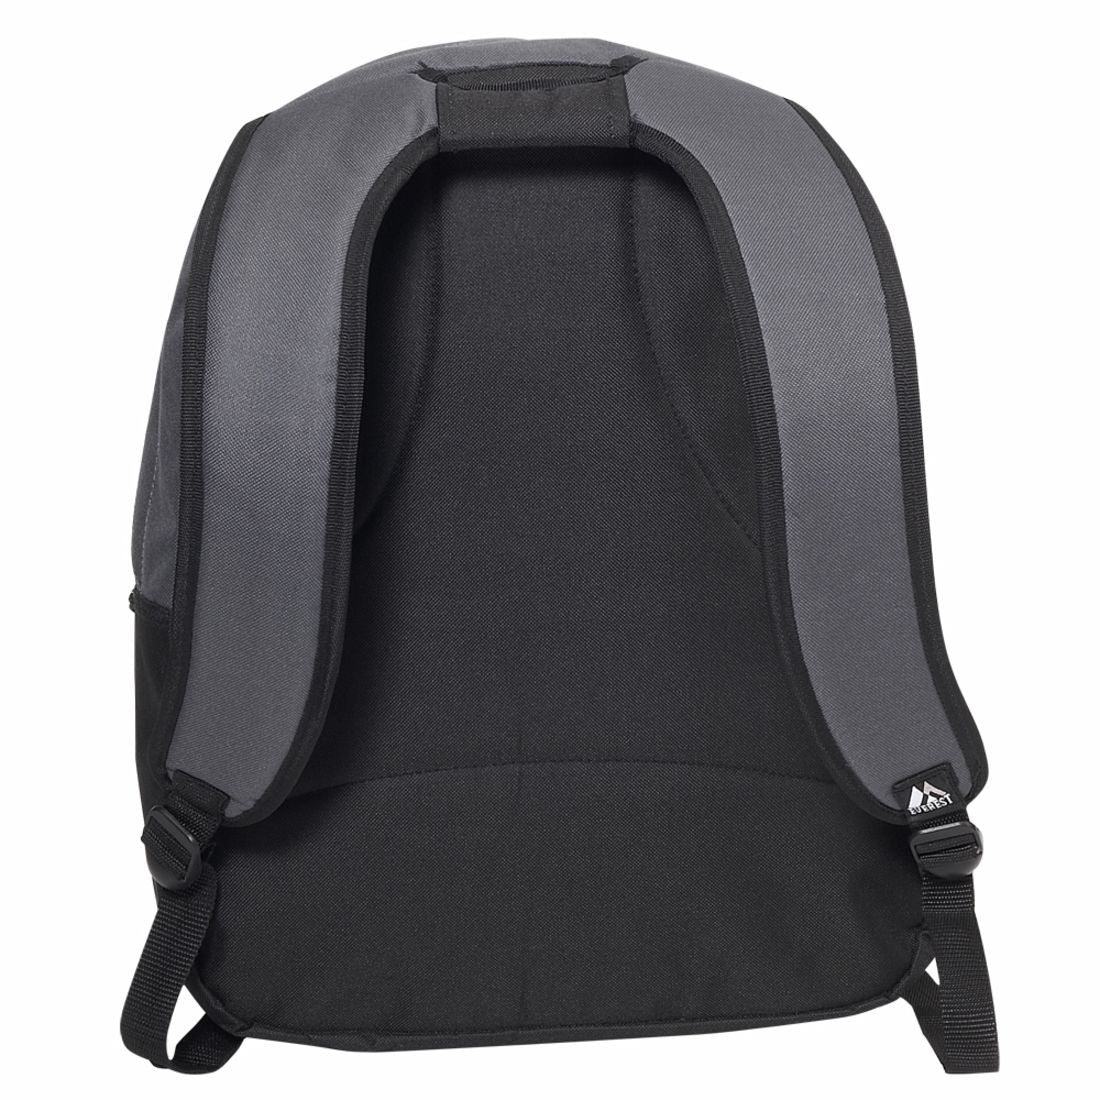 Everest Laptop Computer Backpack